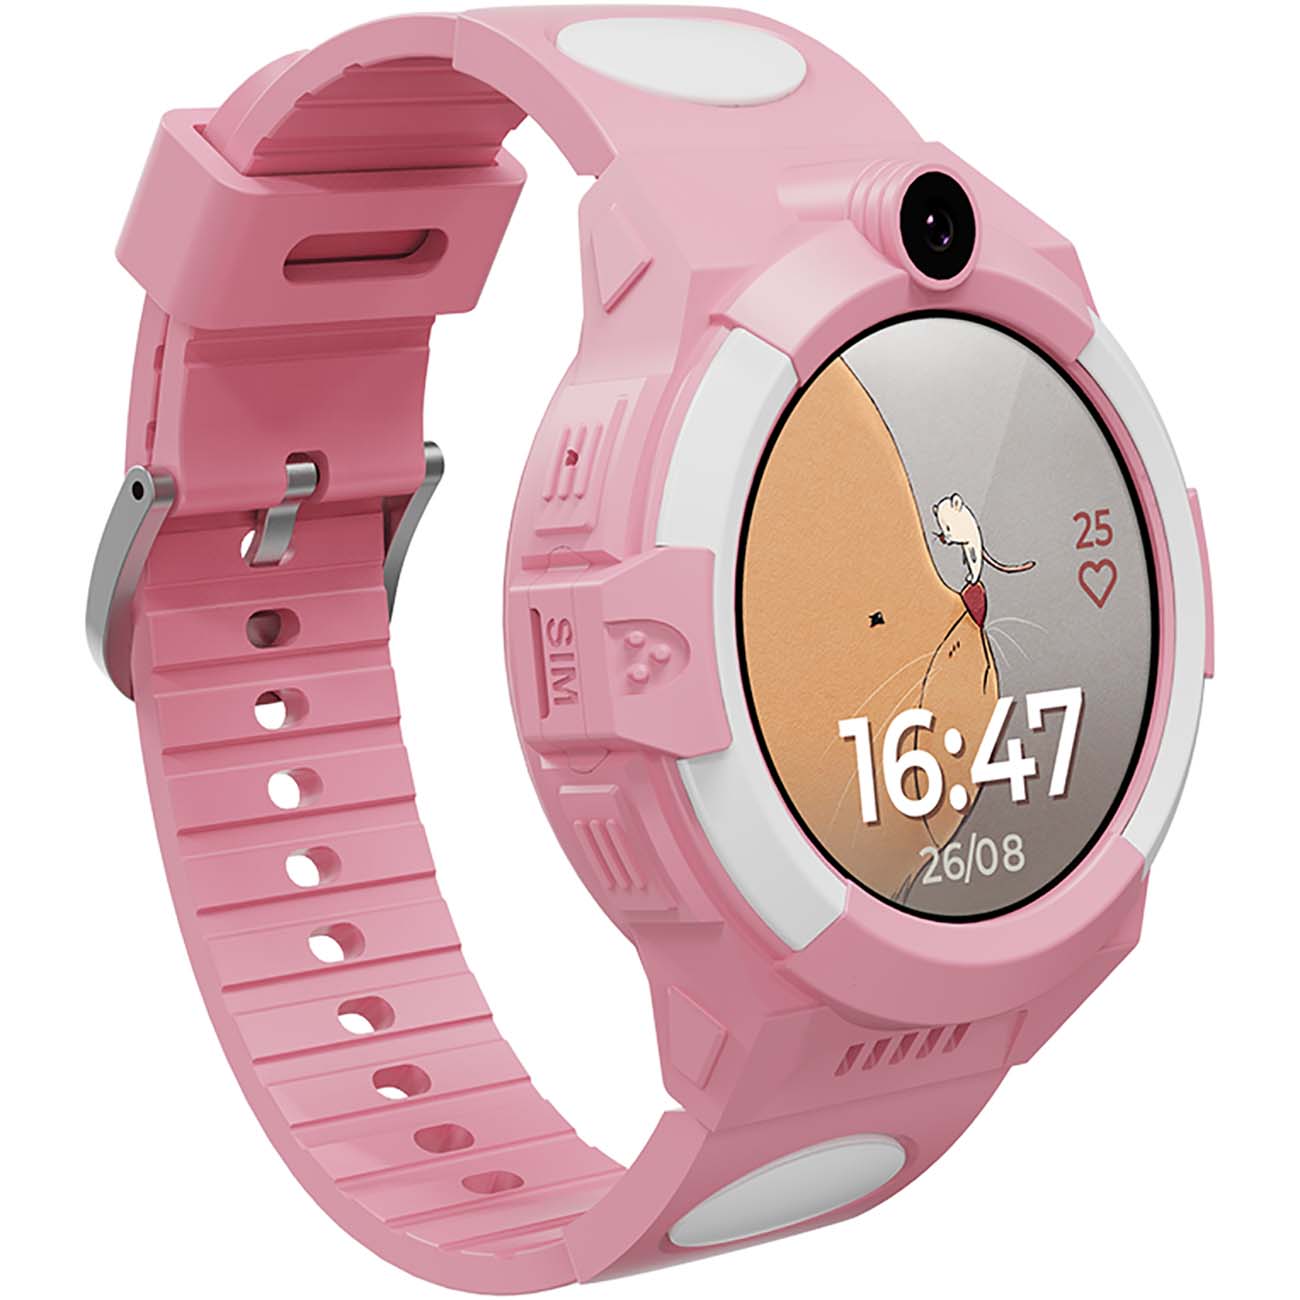 Часы aimoto розовые. Часы Аймото детские. Кнопка жизни Aimoto часы детские. Часы с GPS трекером Aimoto Sport 4g розовый (9220102). Часы геозон 4g.